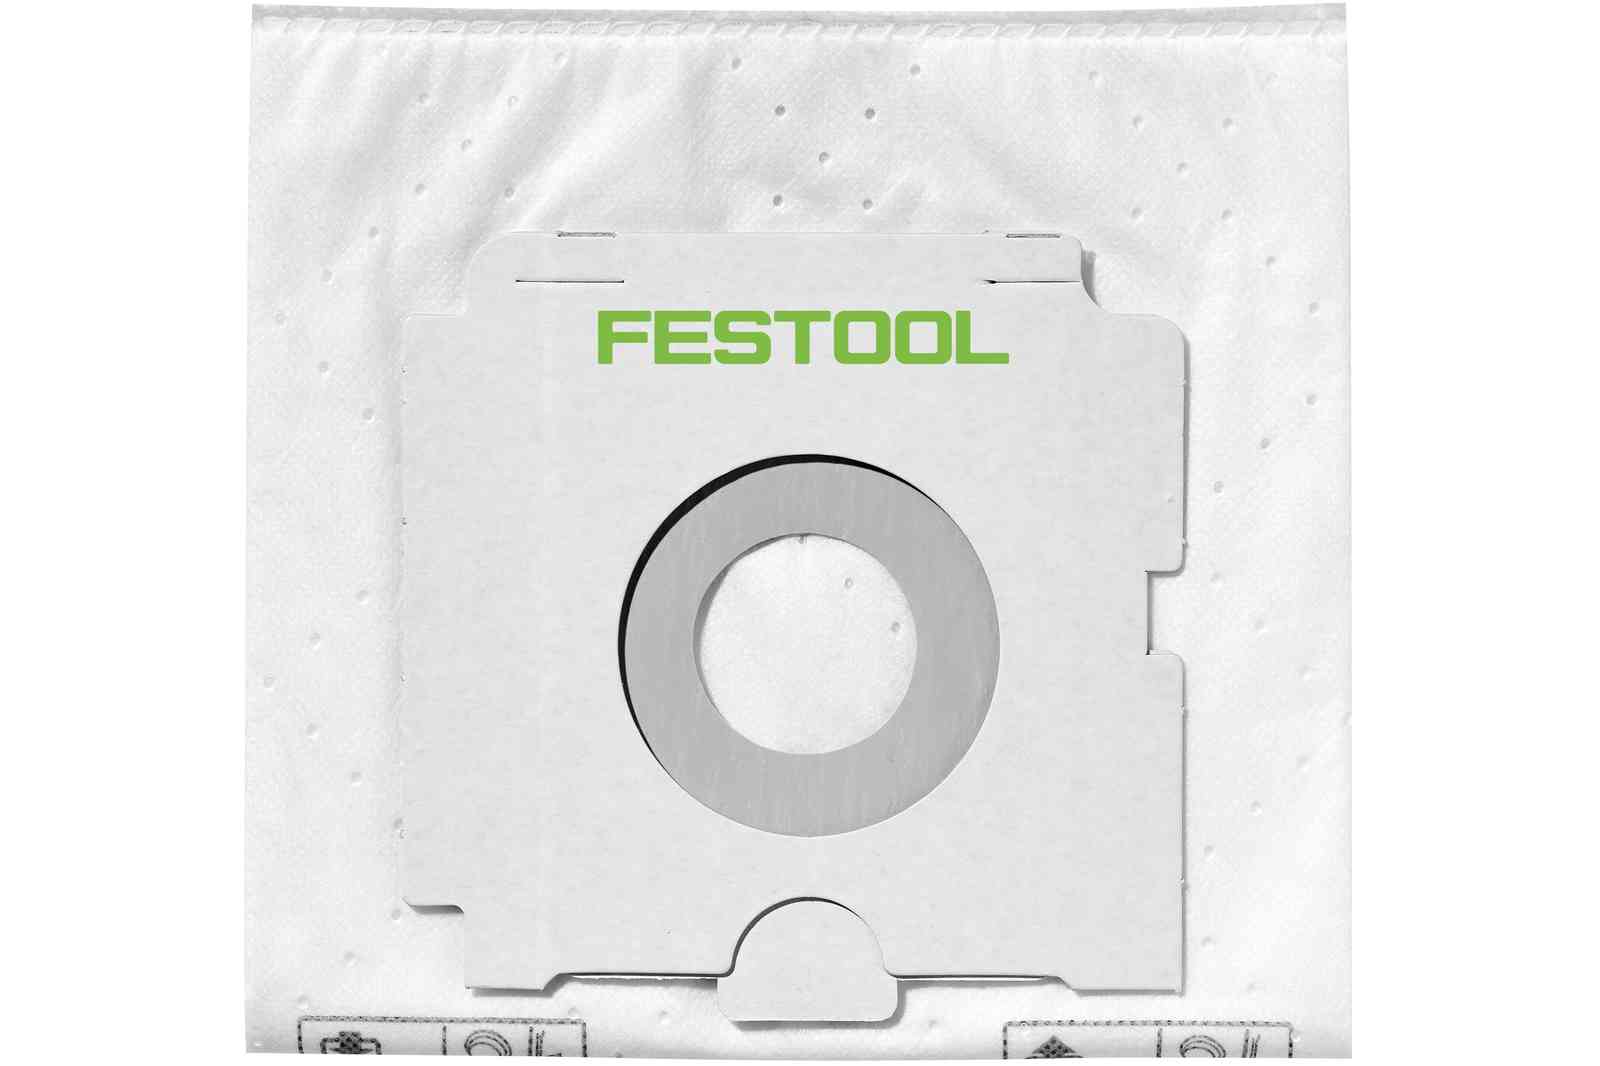 Festool 496187 SELFCLEAN Filter Bag for CT 26 E, 5 Pack